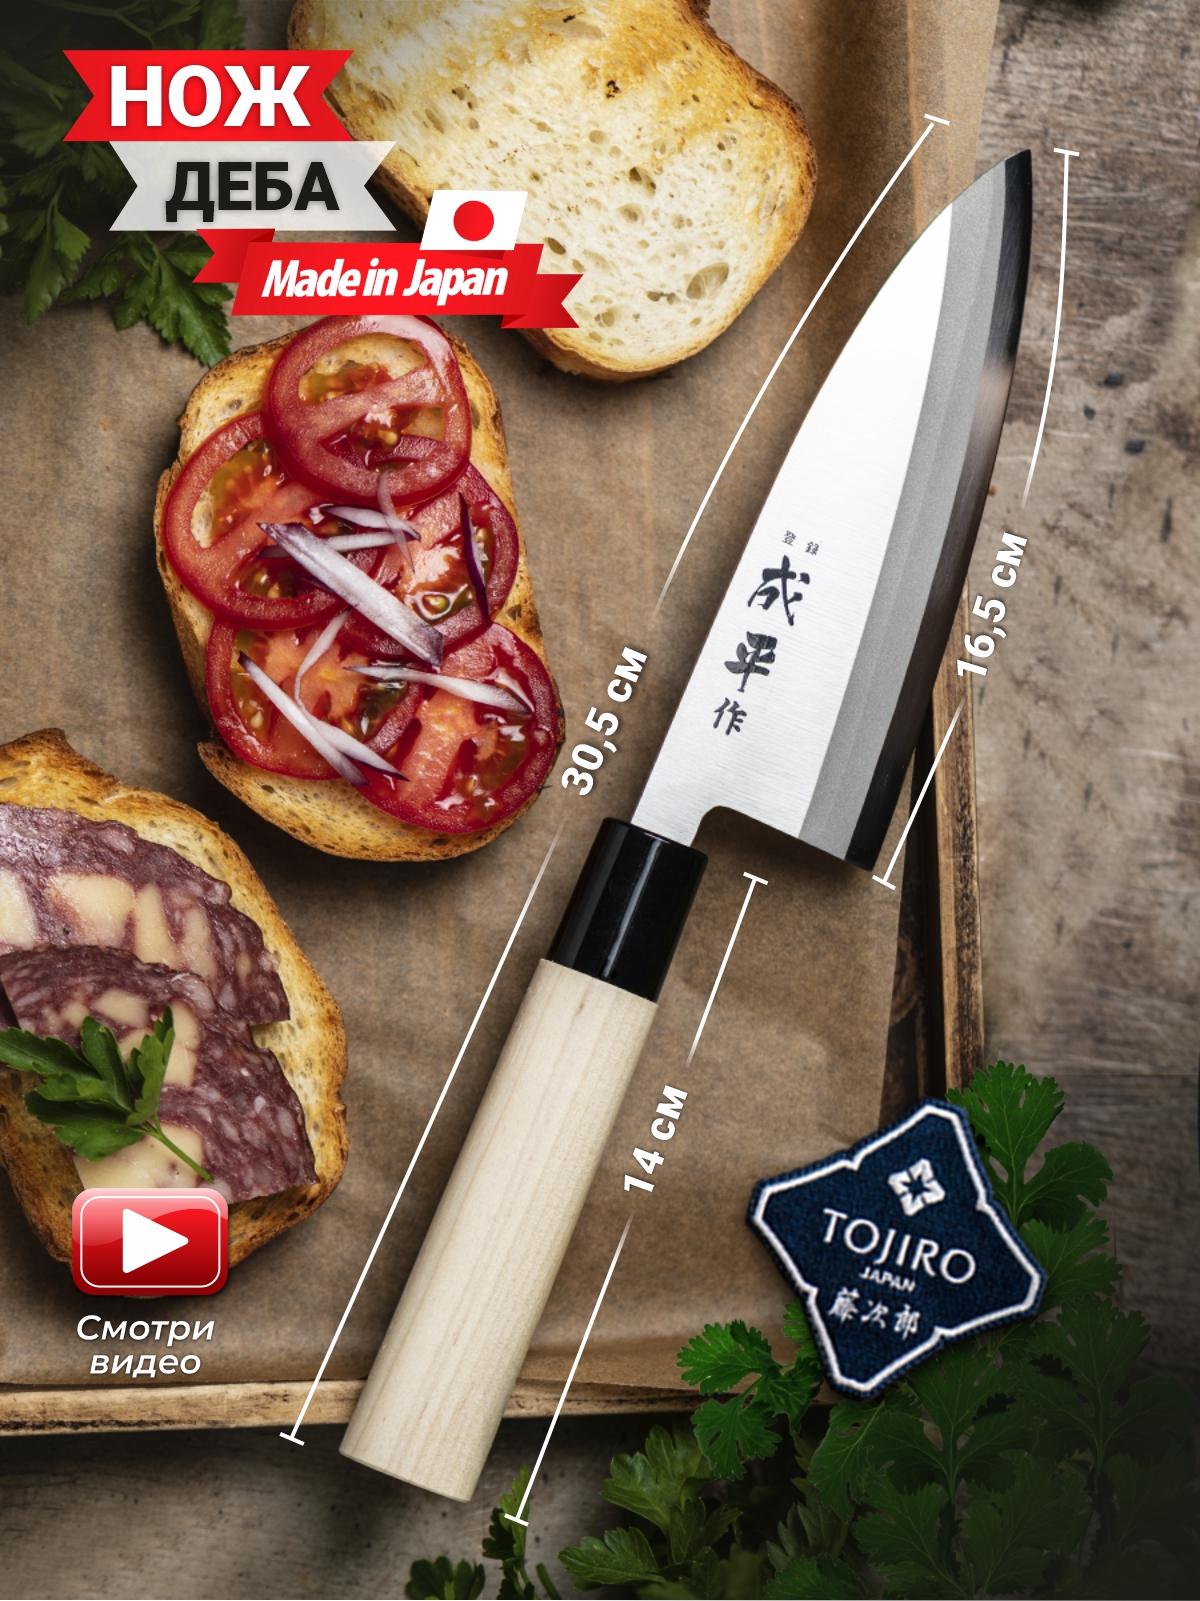 Нож кухонный Деба Fuji Cutlery FC-81, японский нож для разделки рыбы, сталь Mo-V, Япония